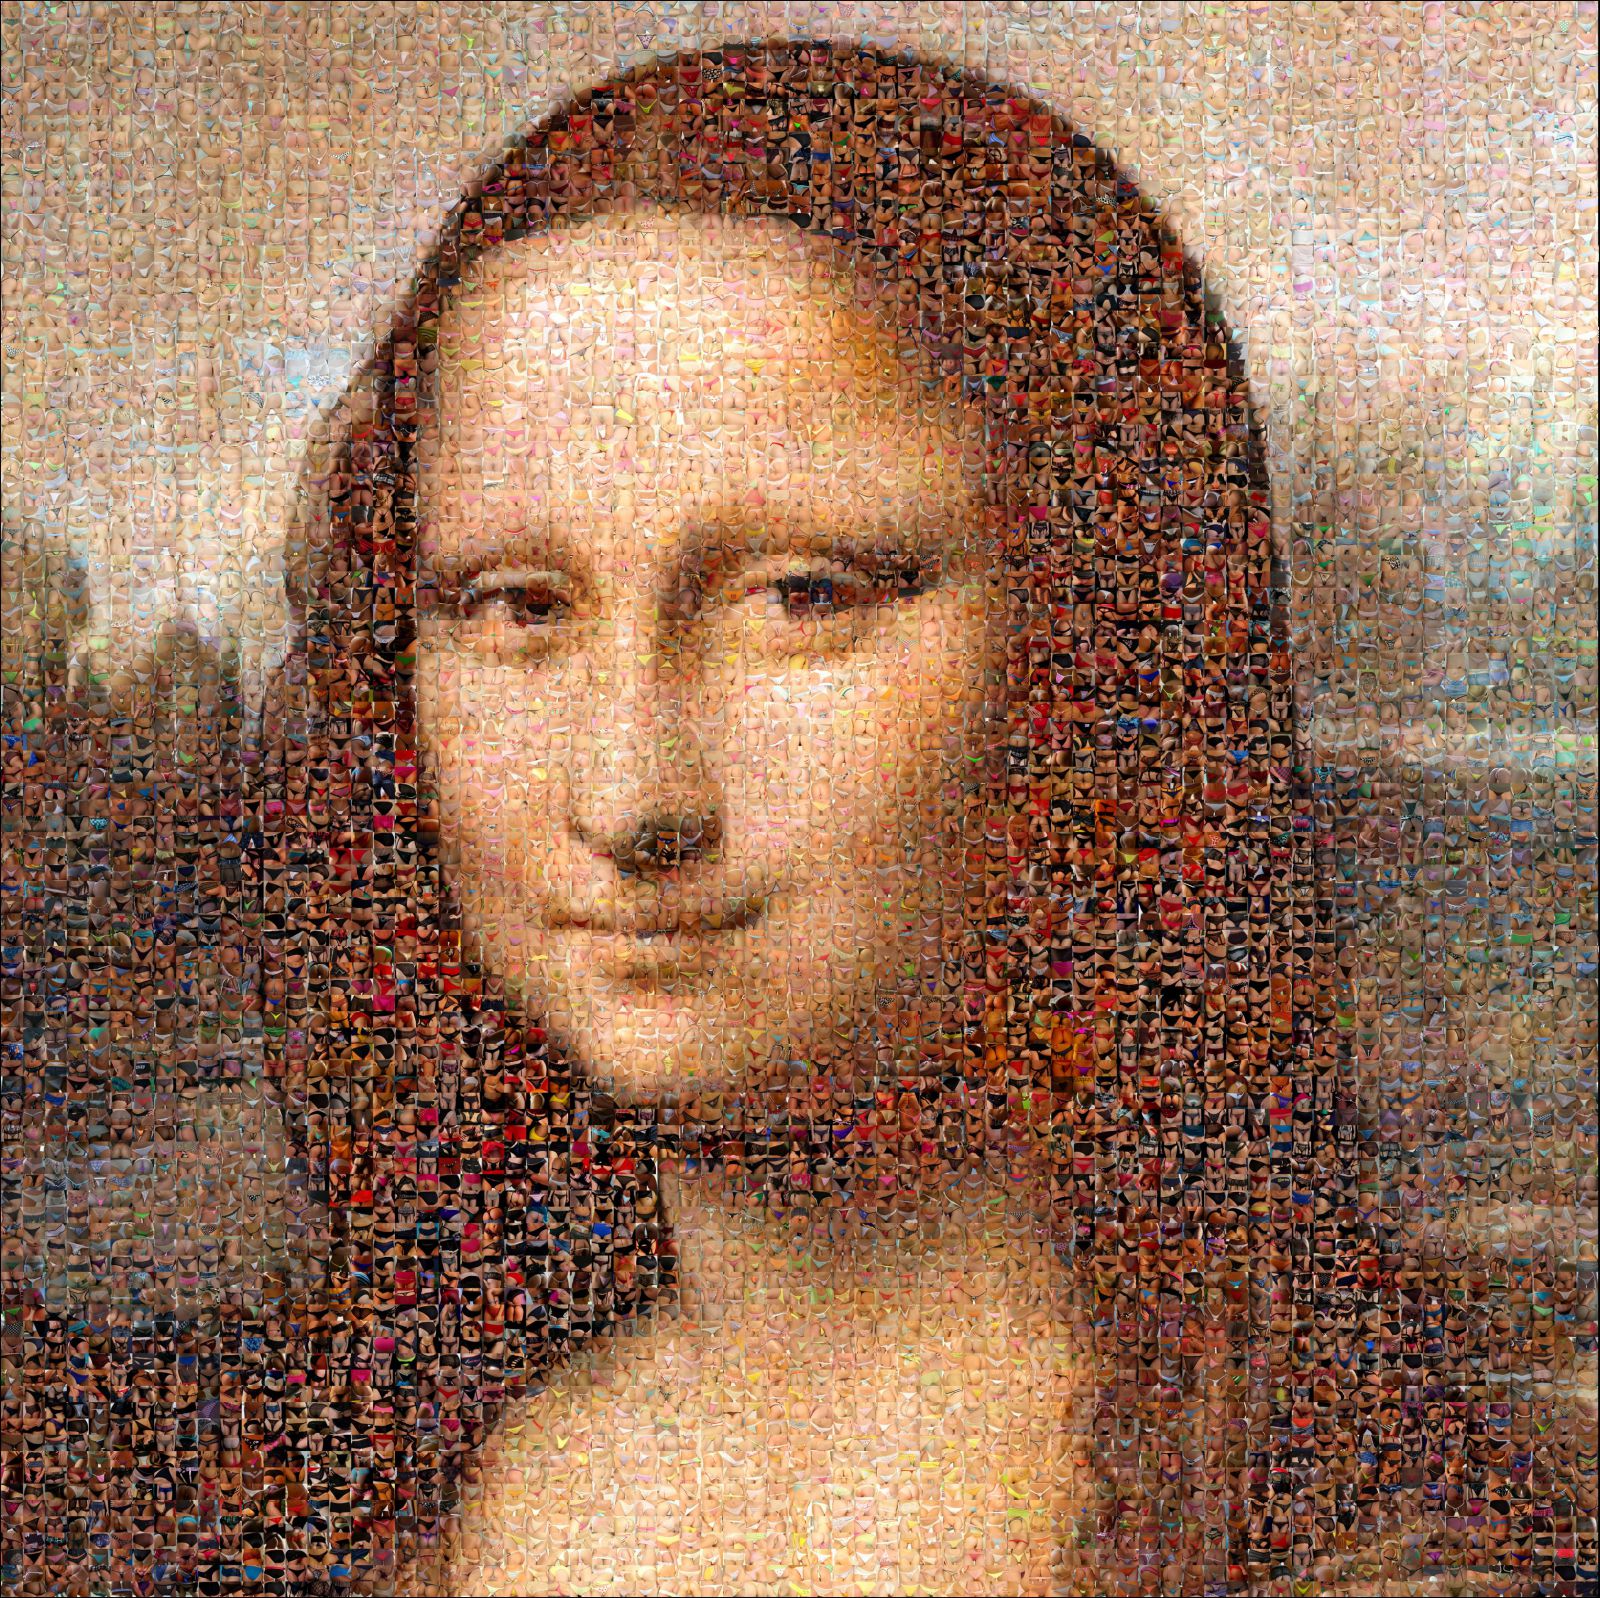 L'intemporelle Joconde - Mona Lisa - Tribute to Da Vinci 